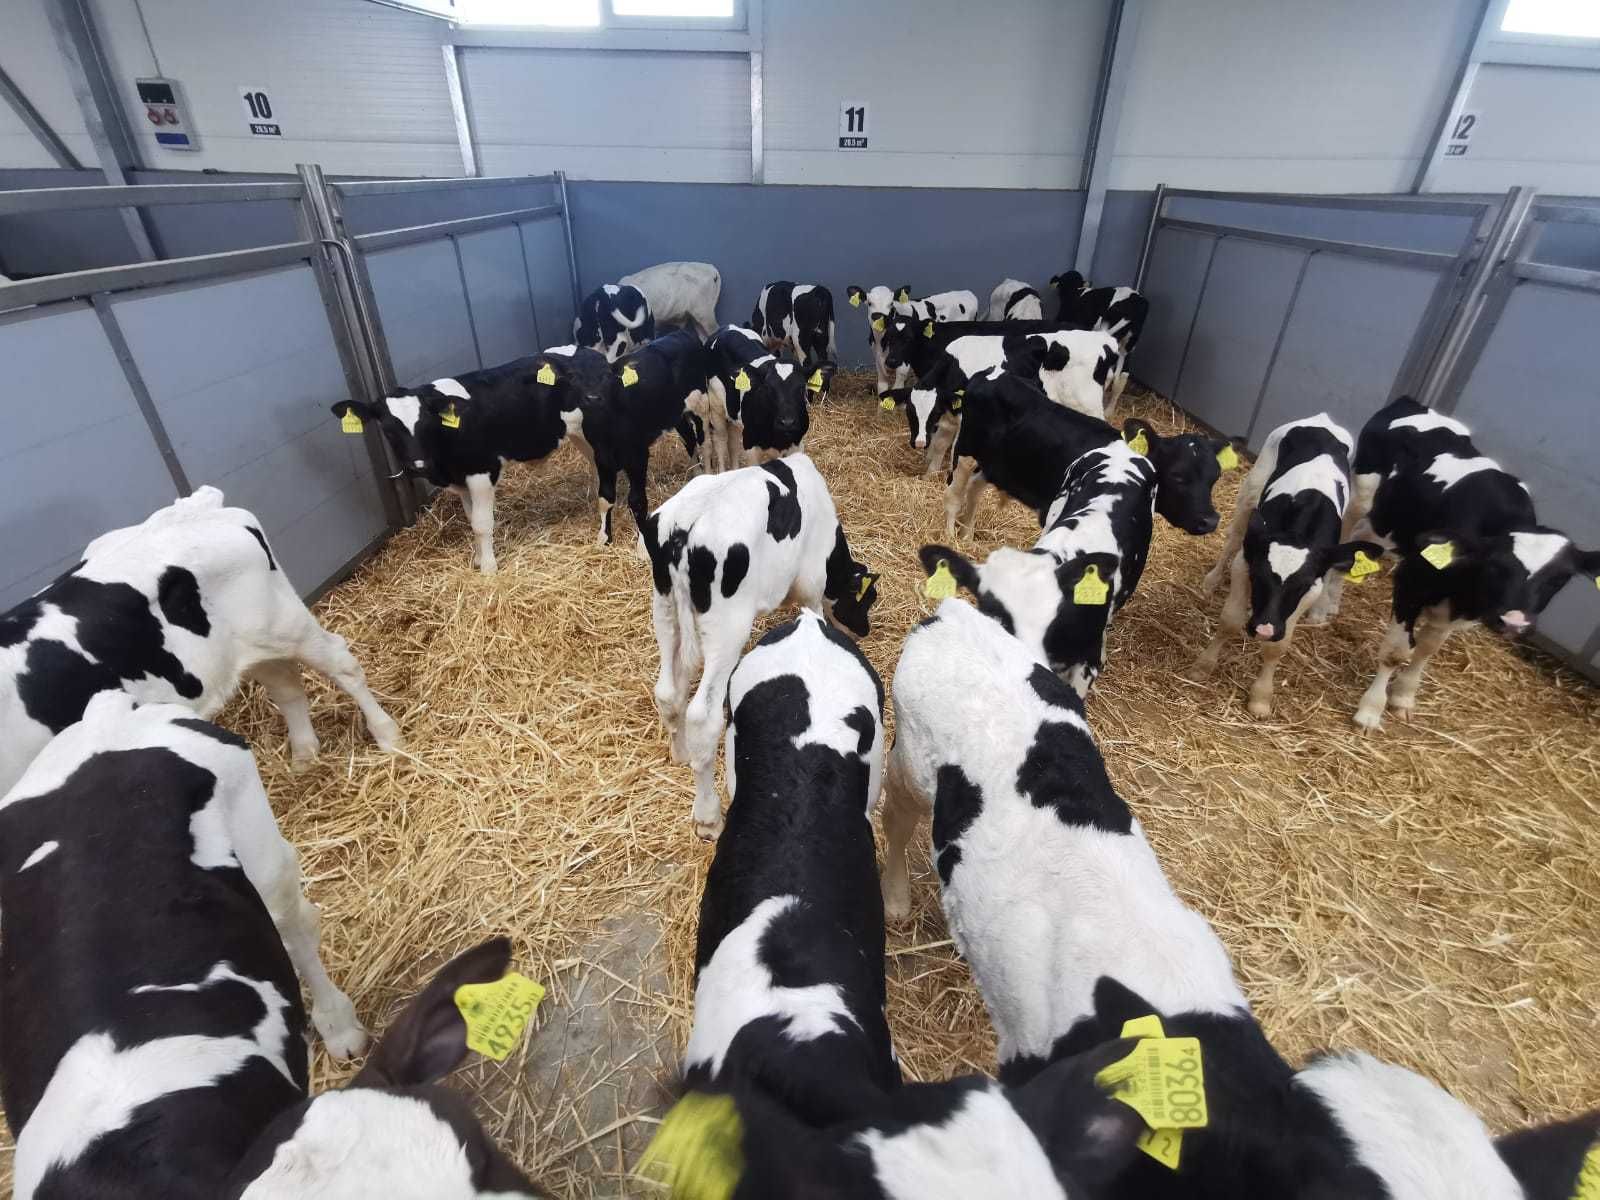 Byczki czarno-białe od 2 do 4 tygodni duży wybór